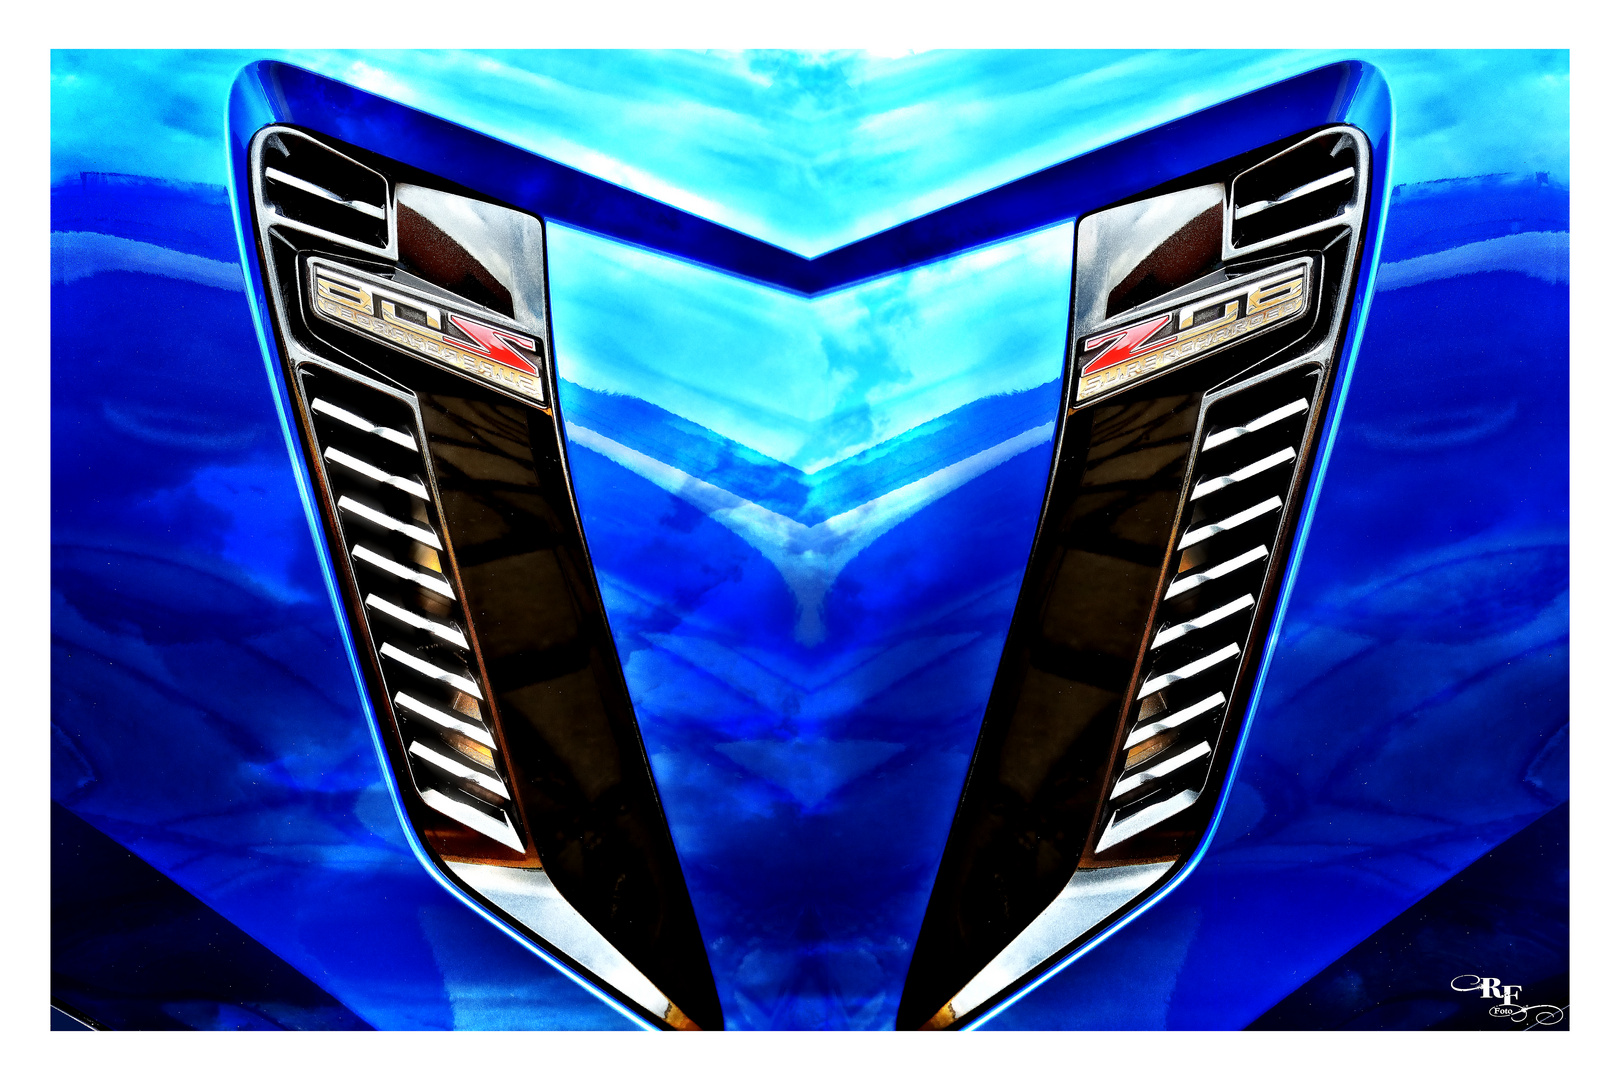 Spiegeleien von Corvette-Details - Bild 2